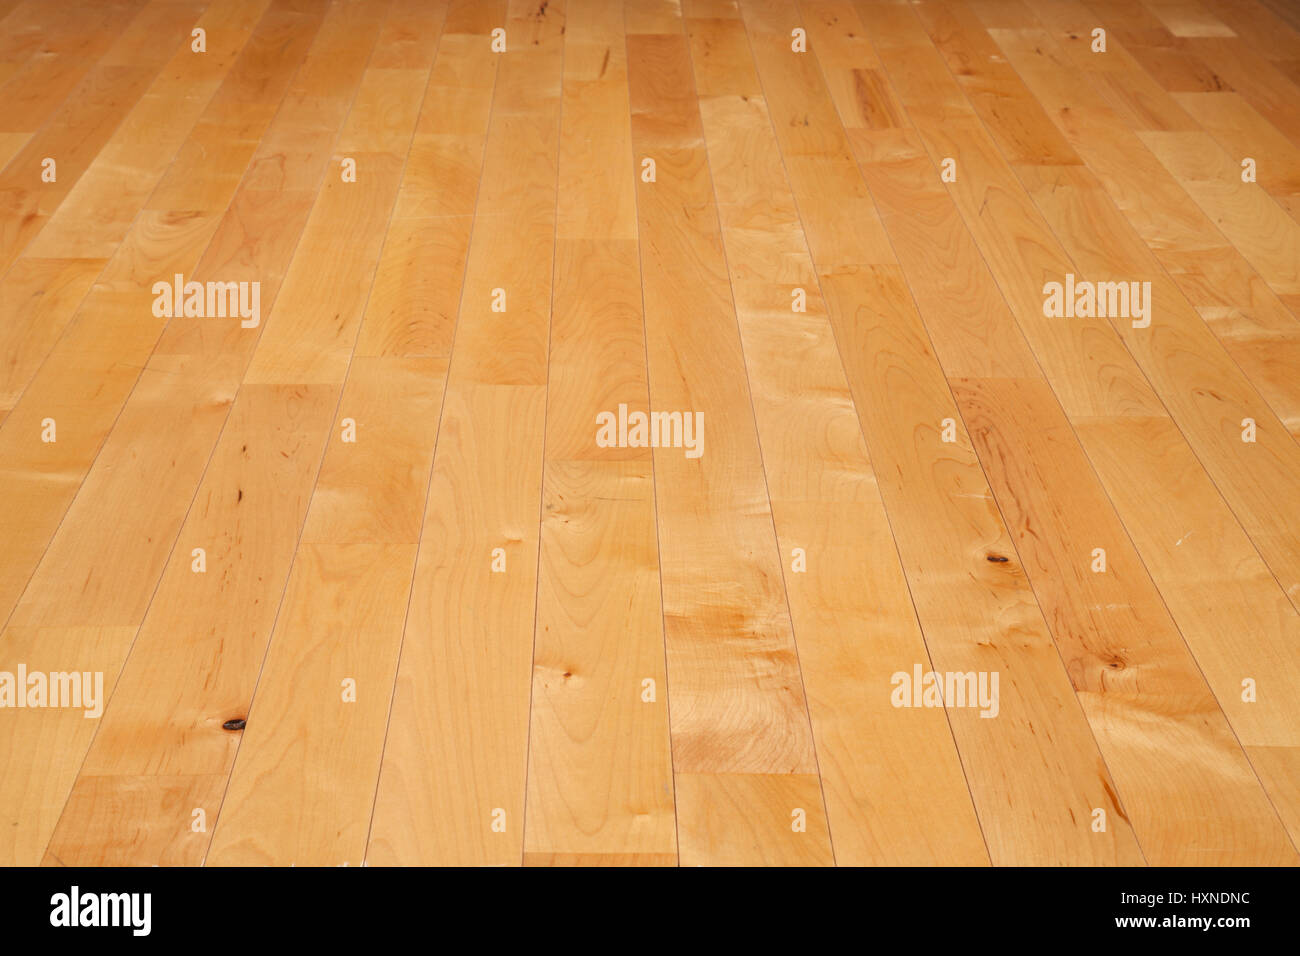 Una cancha de baloncesto suelo hecho de madera de arce vistos en un ángulo bajo Foto de stock